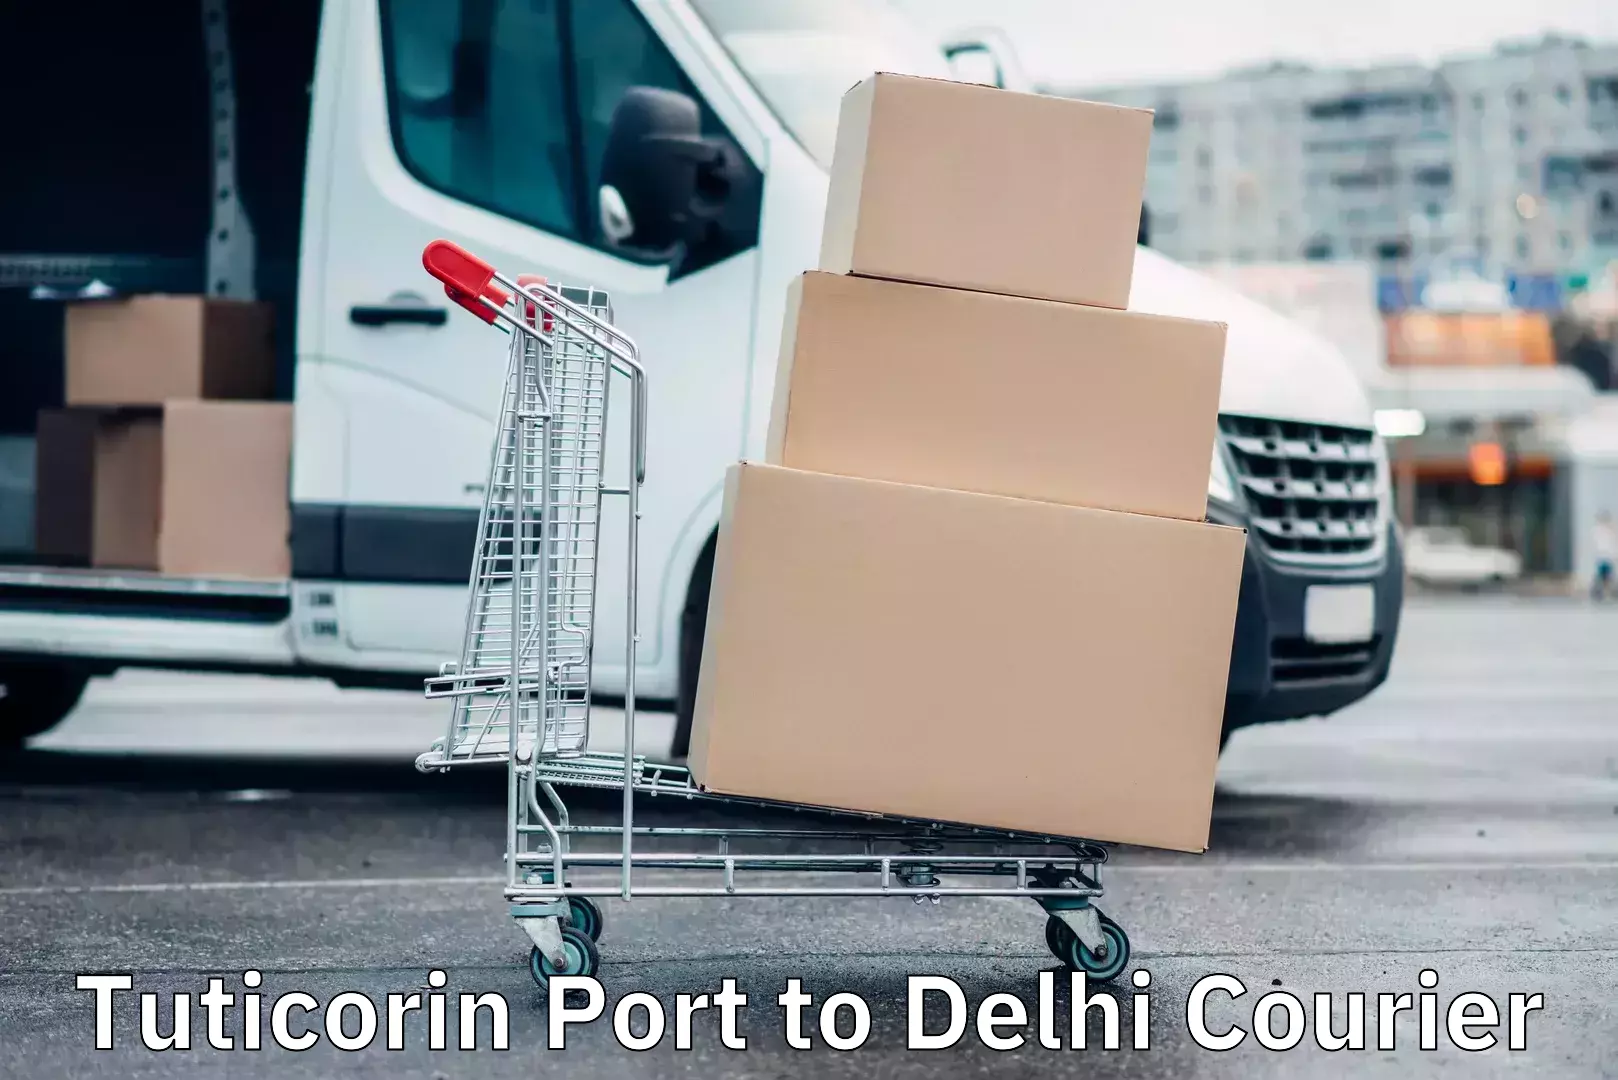 Affordable parcel service Tuticorin Port to Delhi